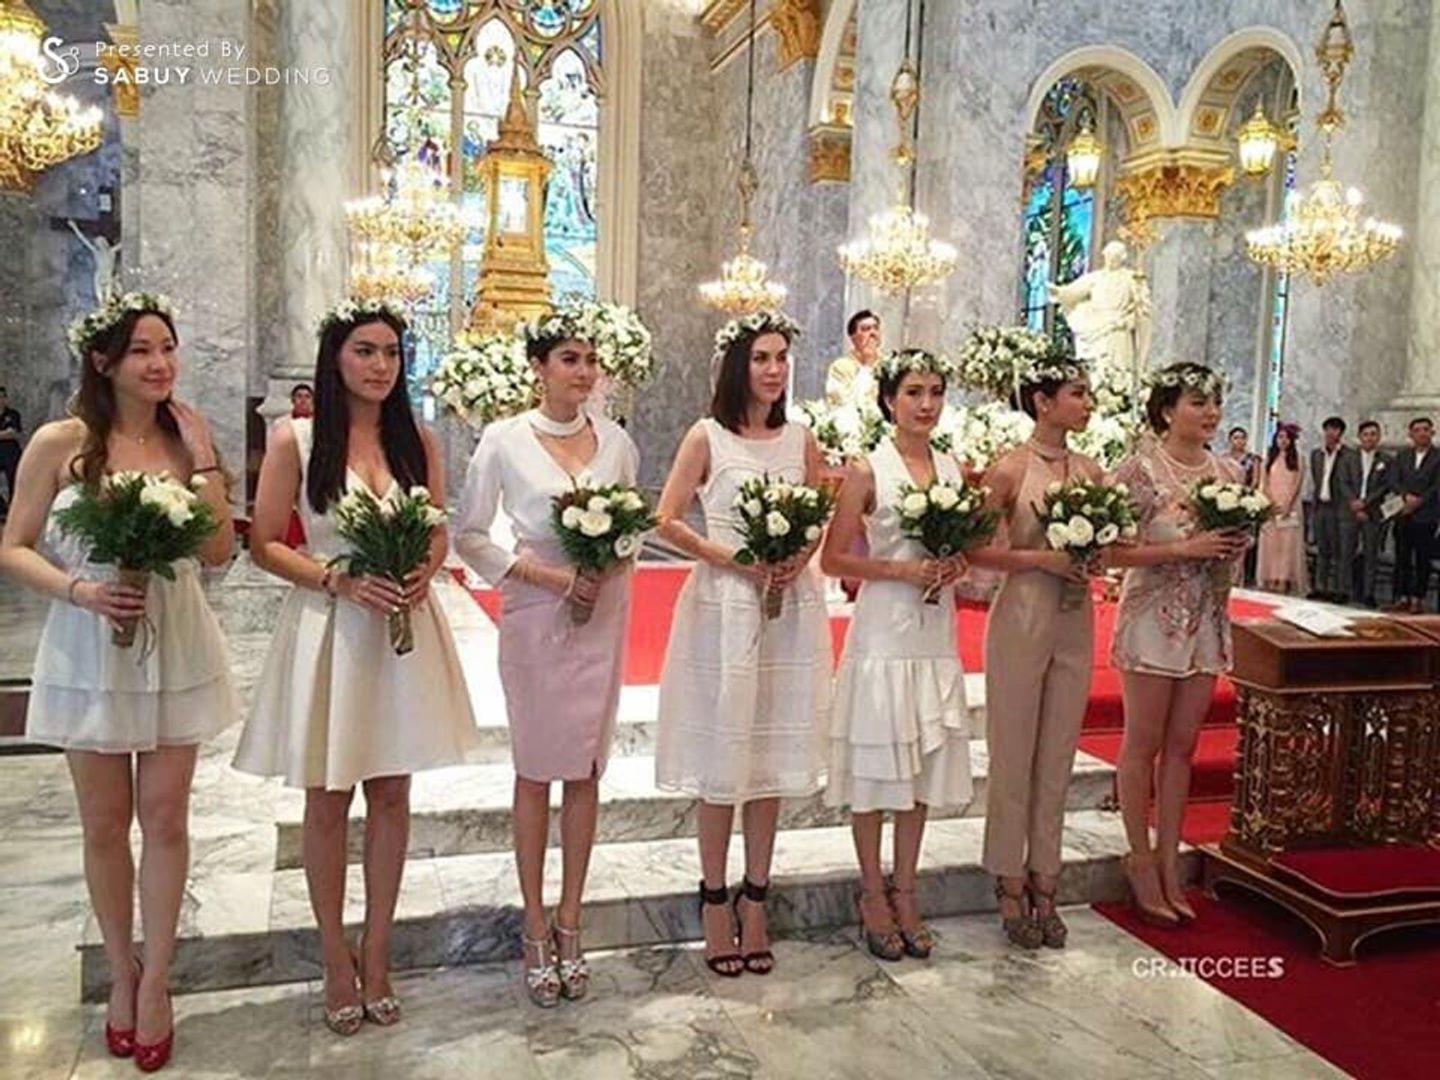 เพื่อนเจ้าสาว,ชุดเพื่อนเจ้าสาว,ช่อดอกไม้,งานแต่งดารา กุ๊บกิ๊บ-บี้ จูงมือเข้าพิธีแต่งงานหวานซึ้ง ในโบสถ์คริสต์